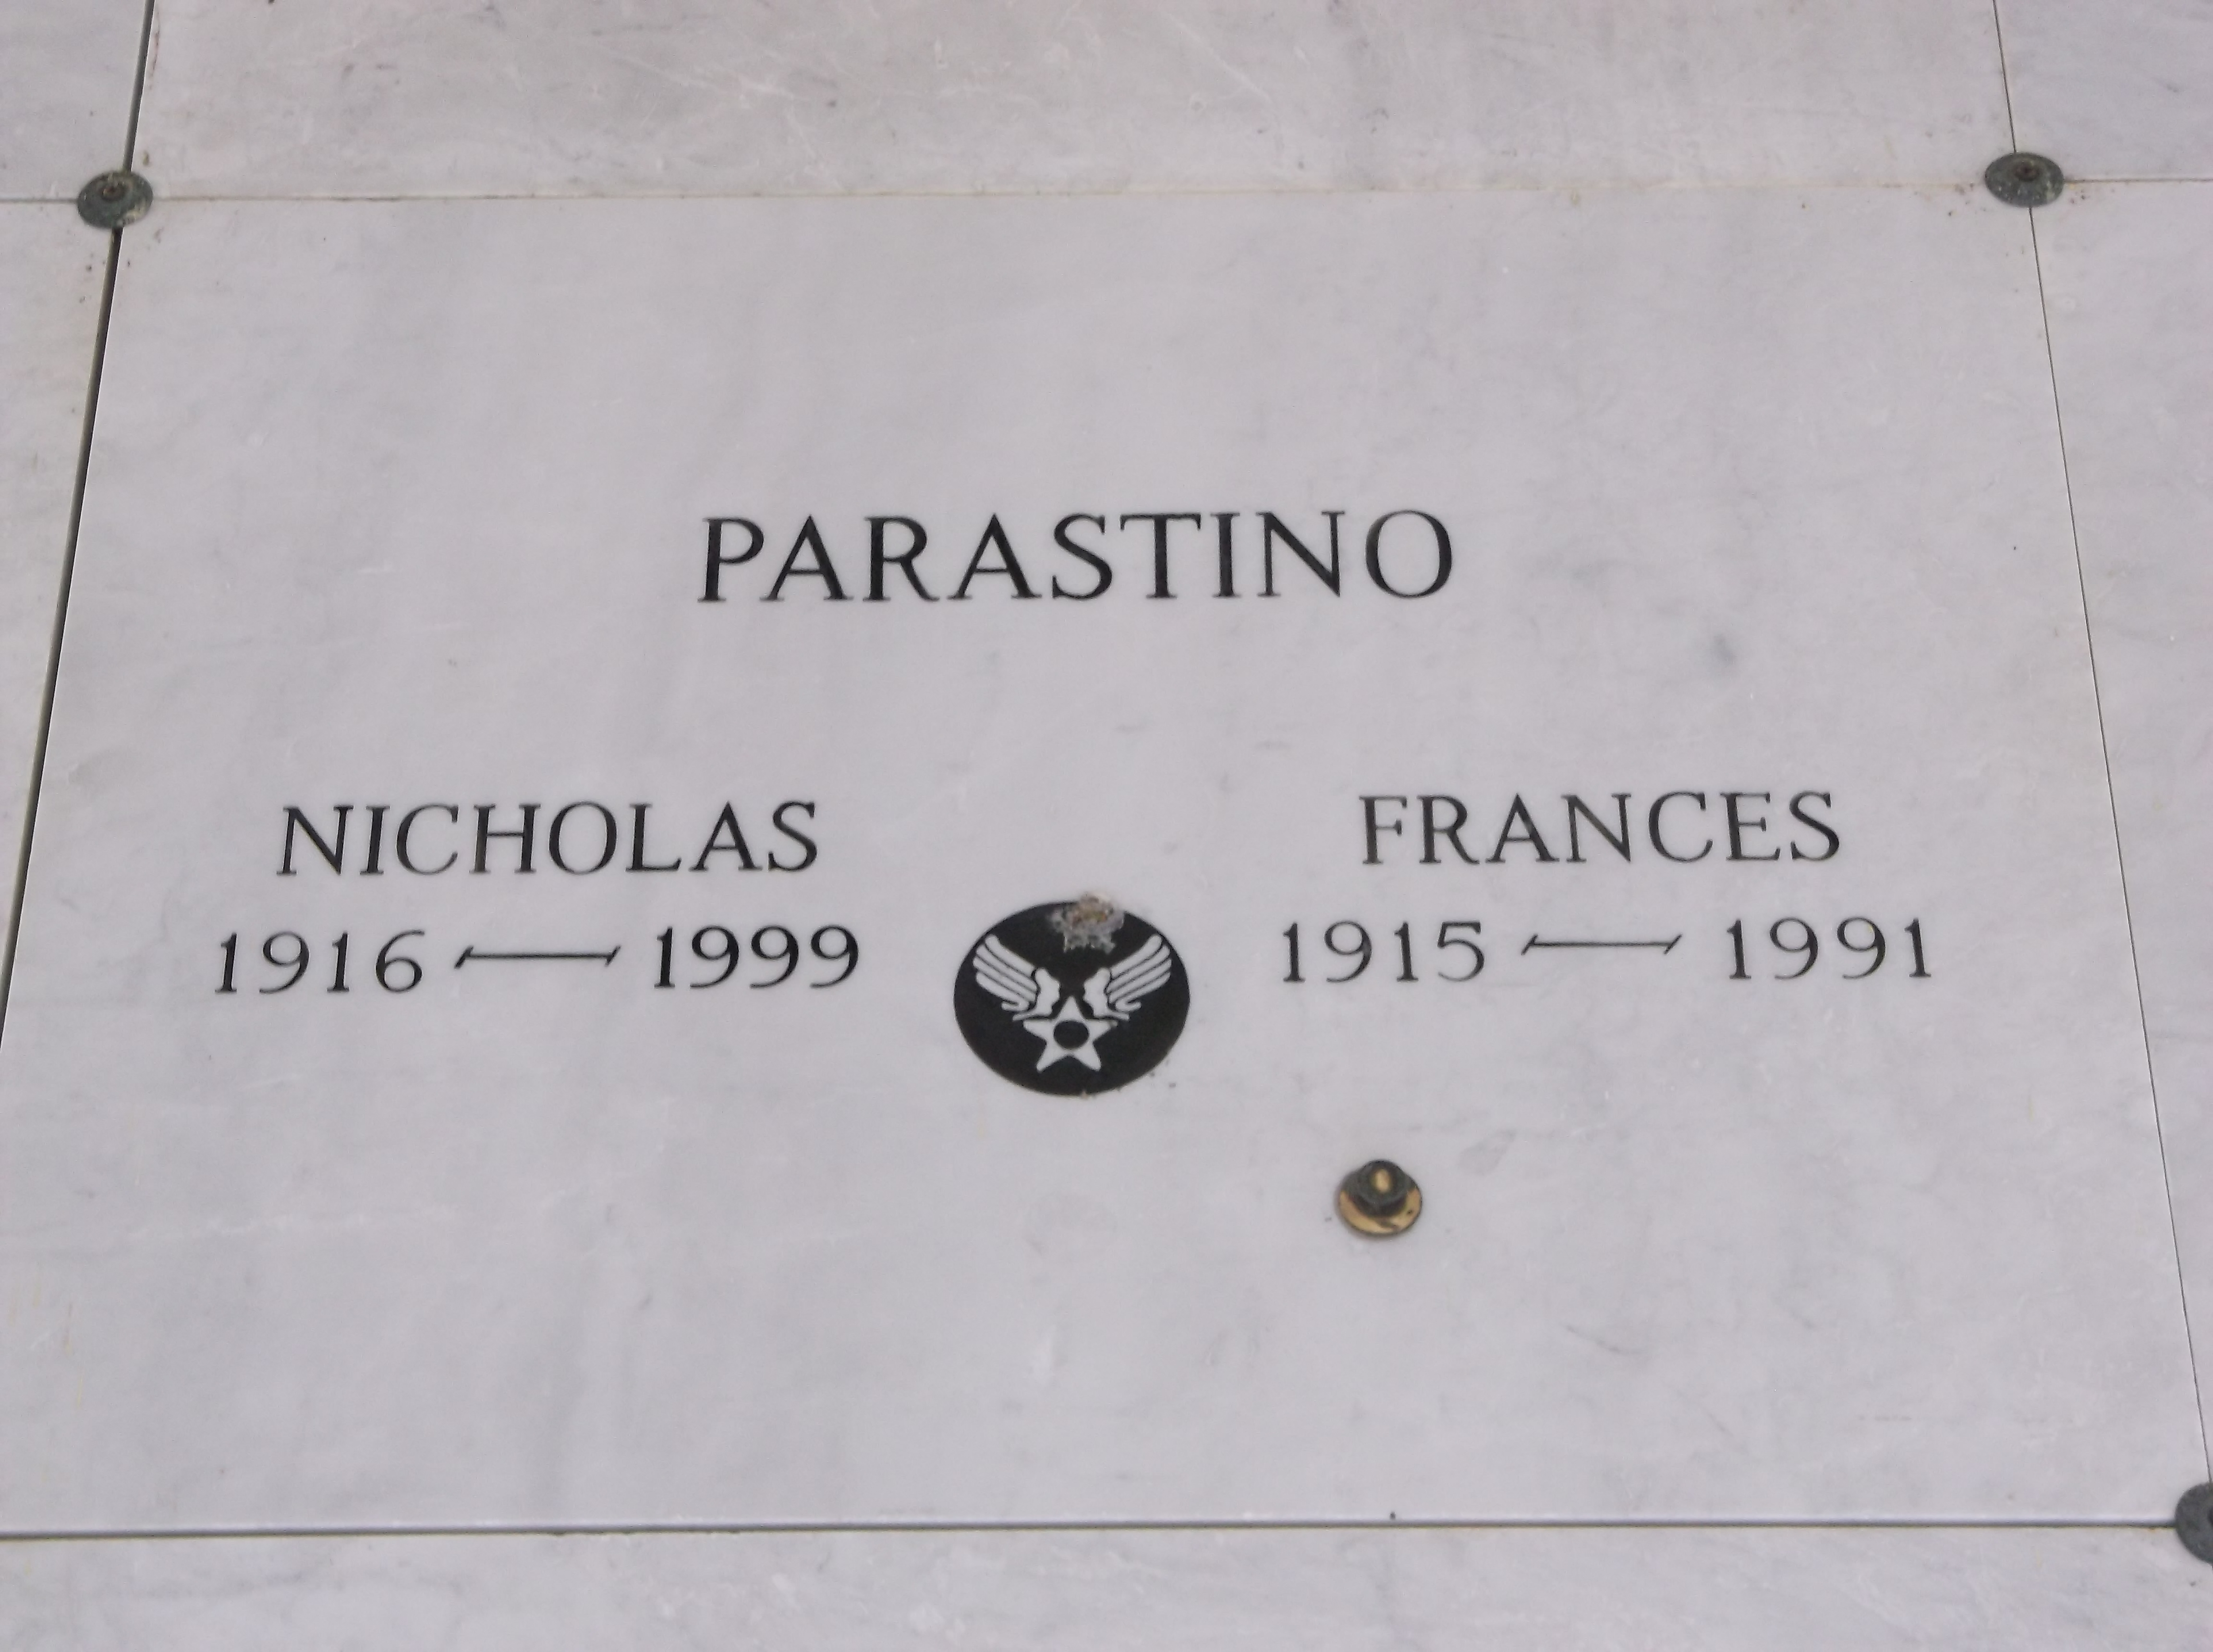 Nicholas Parastino